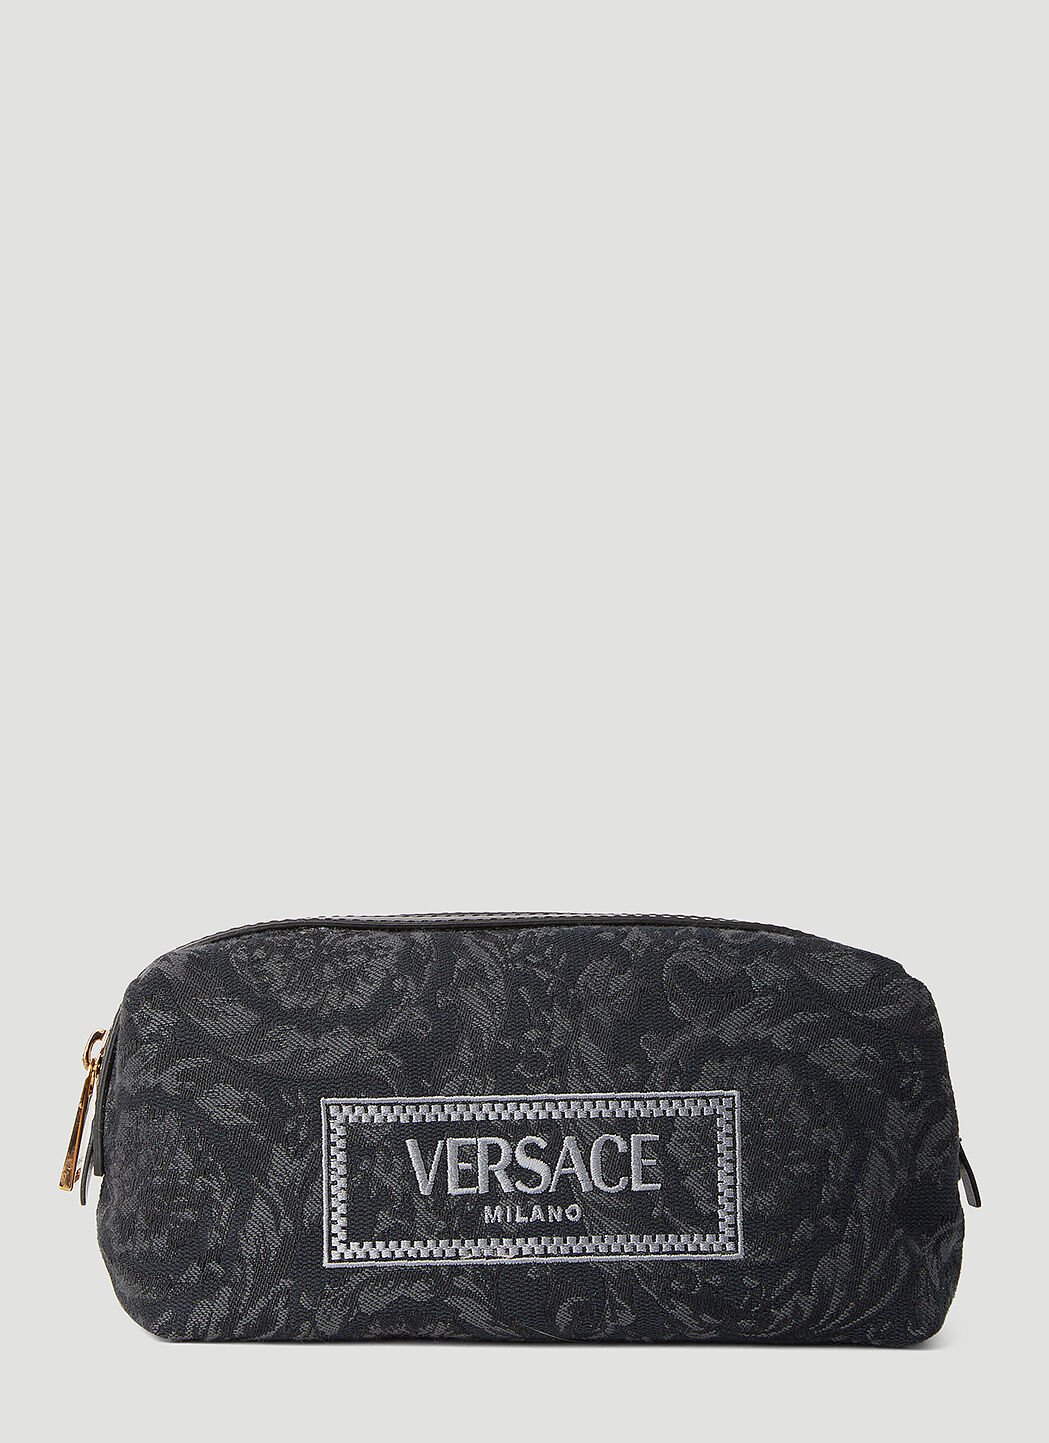 Versace Athena 巴洛克提花化妆包 蓝色 ver0255008